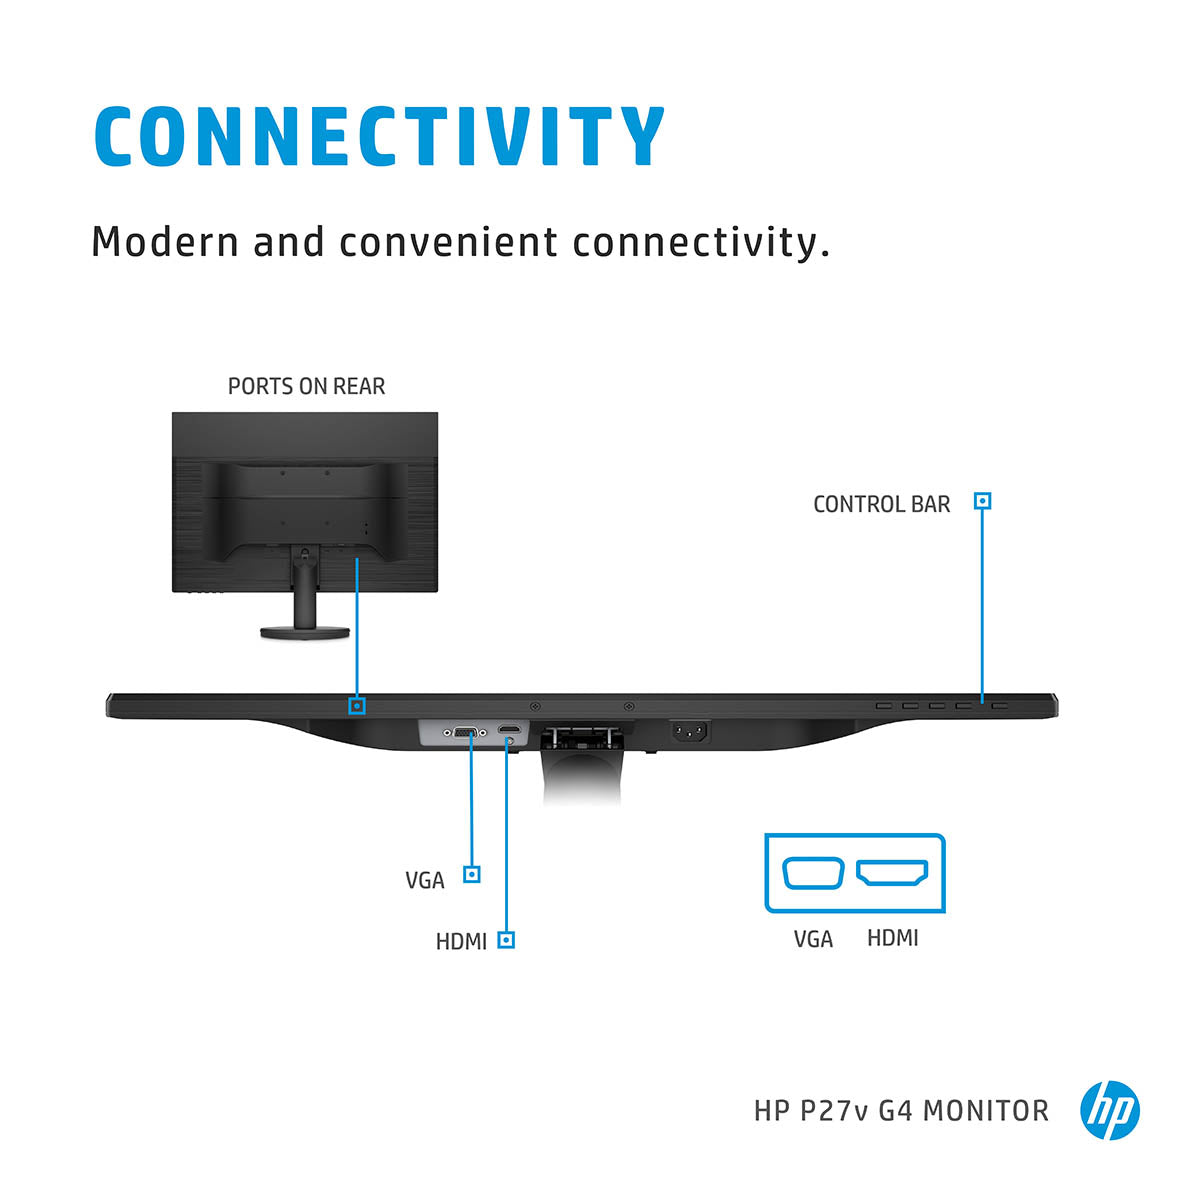 HP P27v G4 27-इंच फुल HD IPS पैनल एंटी-ग्लेयर मॉनिटर 178° व्यूइंग एंगल और लो ब्लू लाइट मोड के साथ